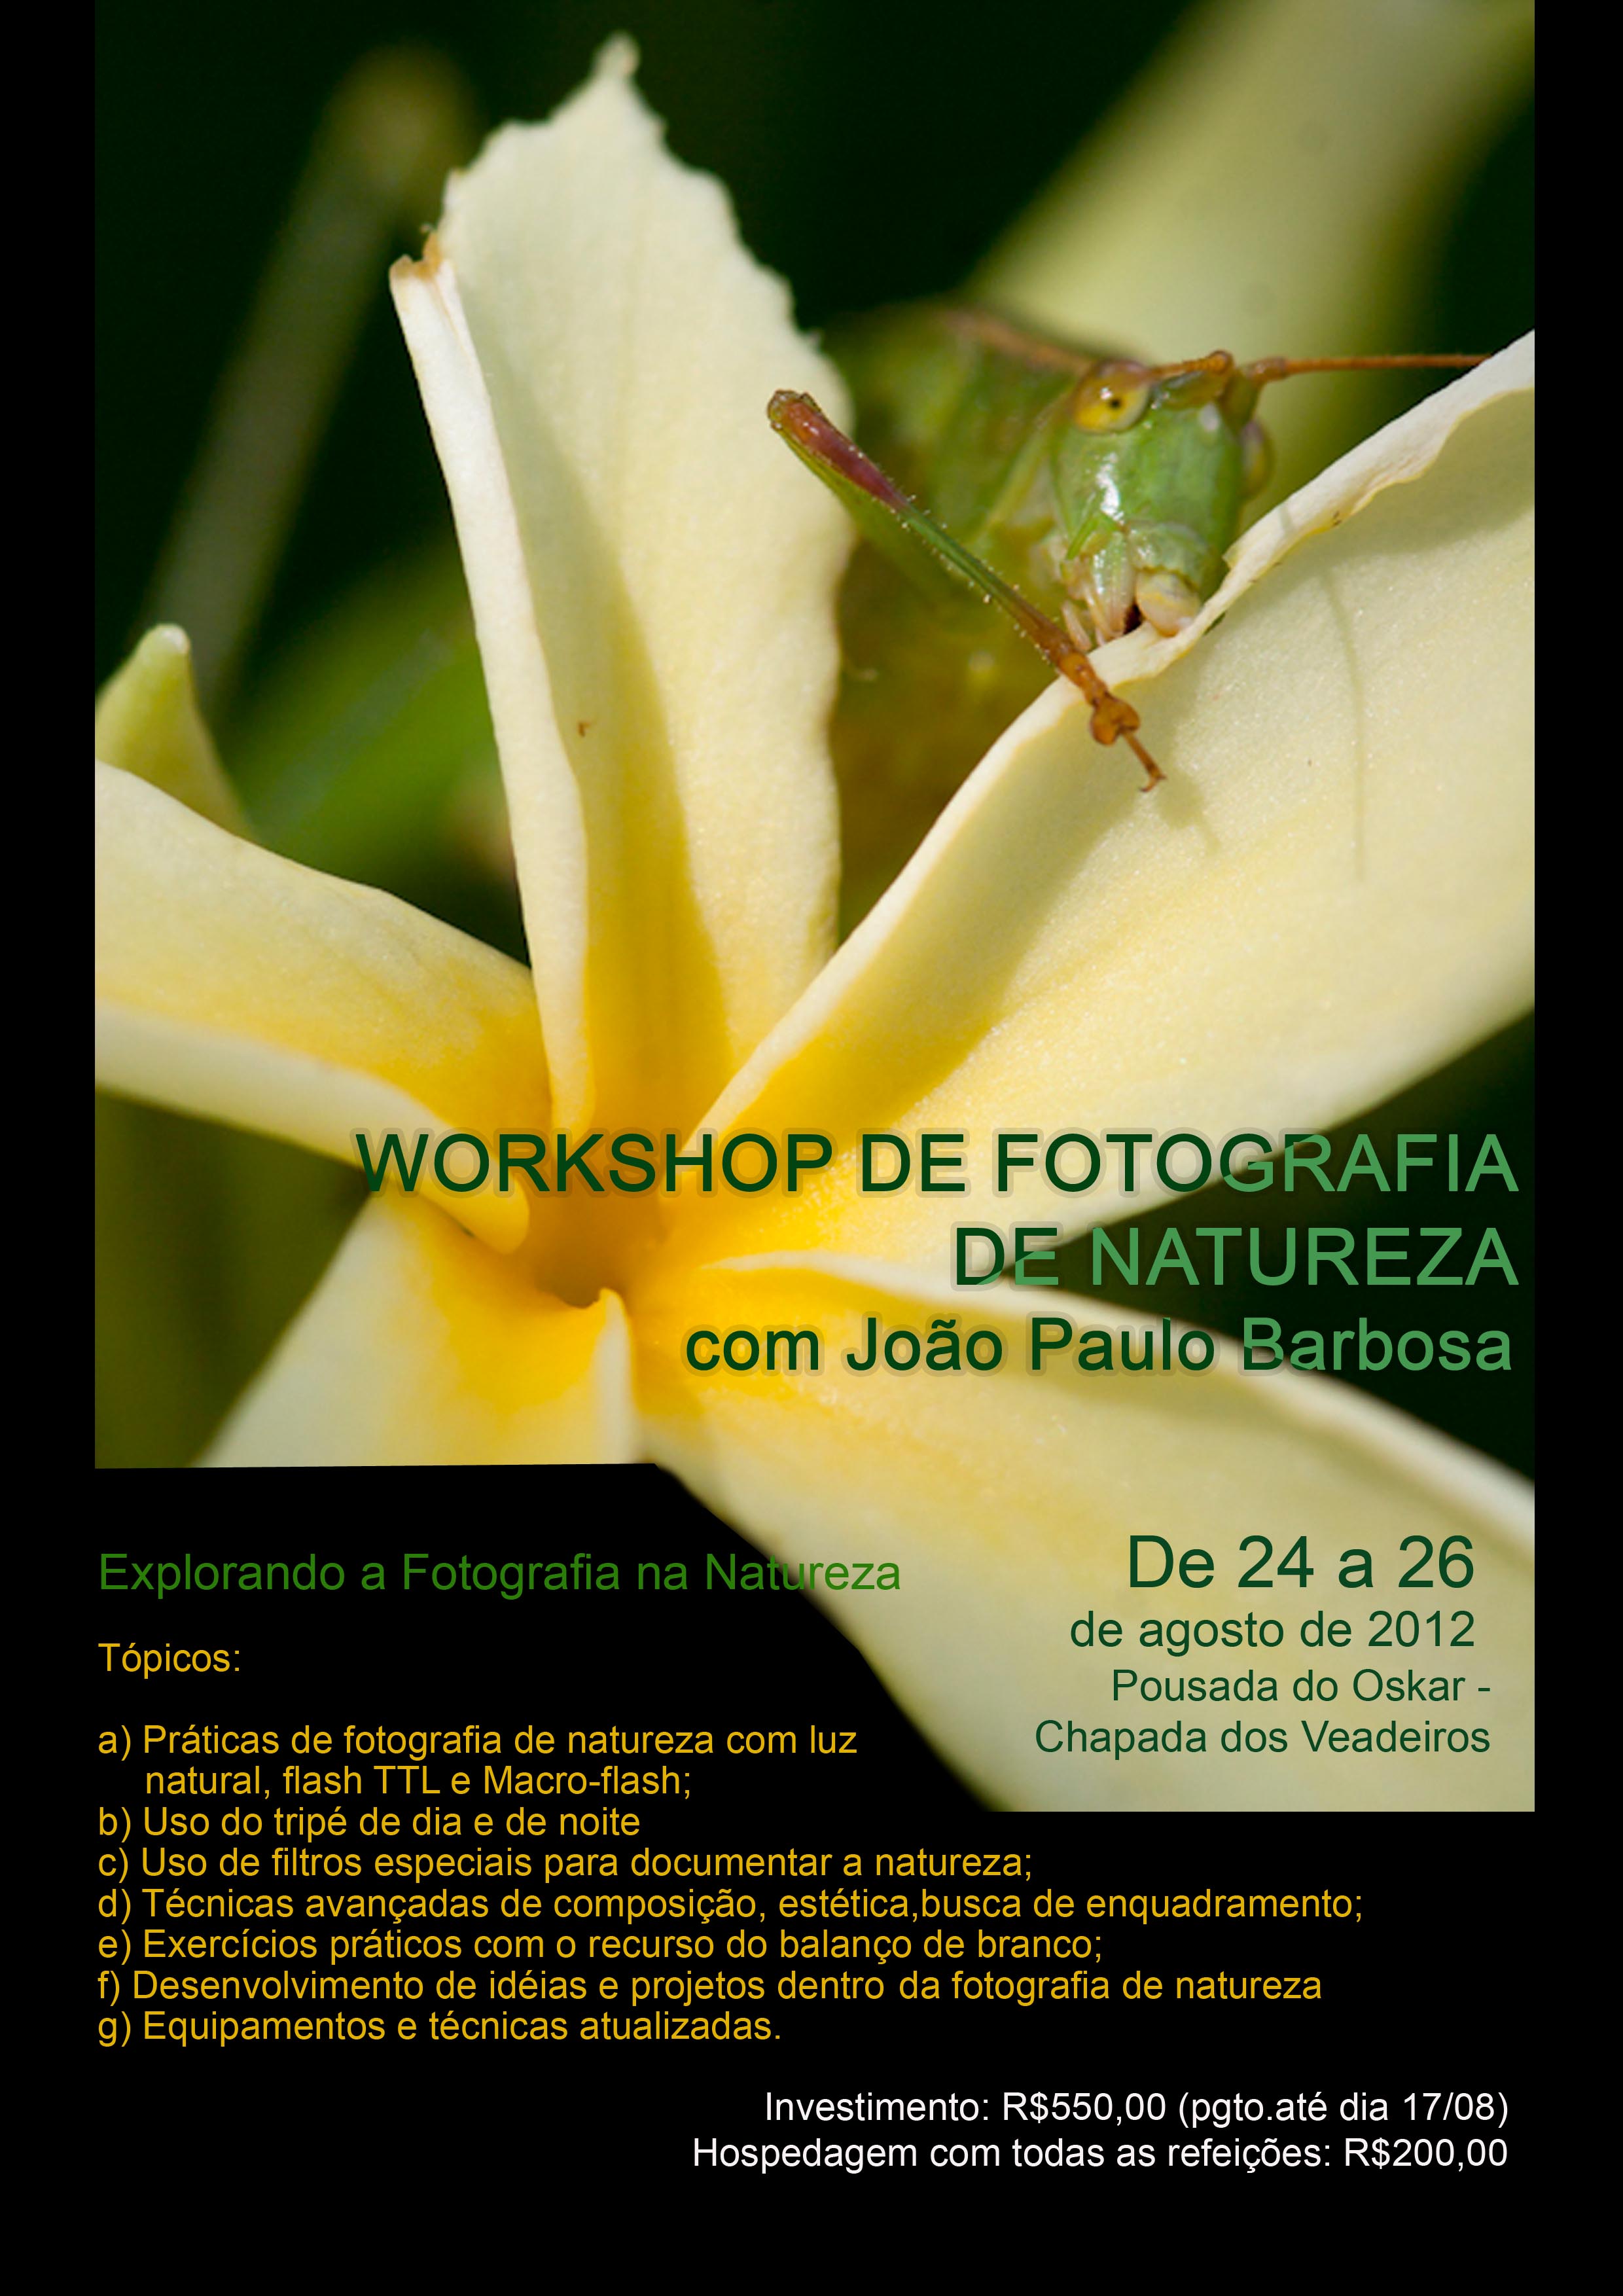 Workshop - Fotografia de Natureza - com Jo?o Paulo Barbosa -dias  24 a 26 de Agosto - ?s 8h.Onde:Pousada do Oskar